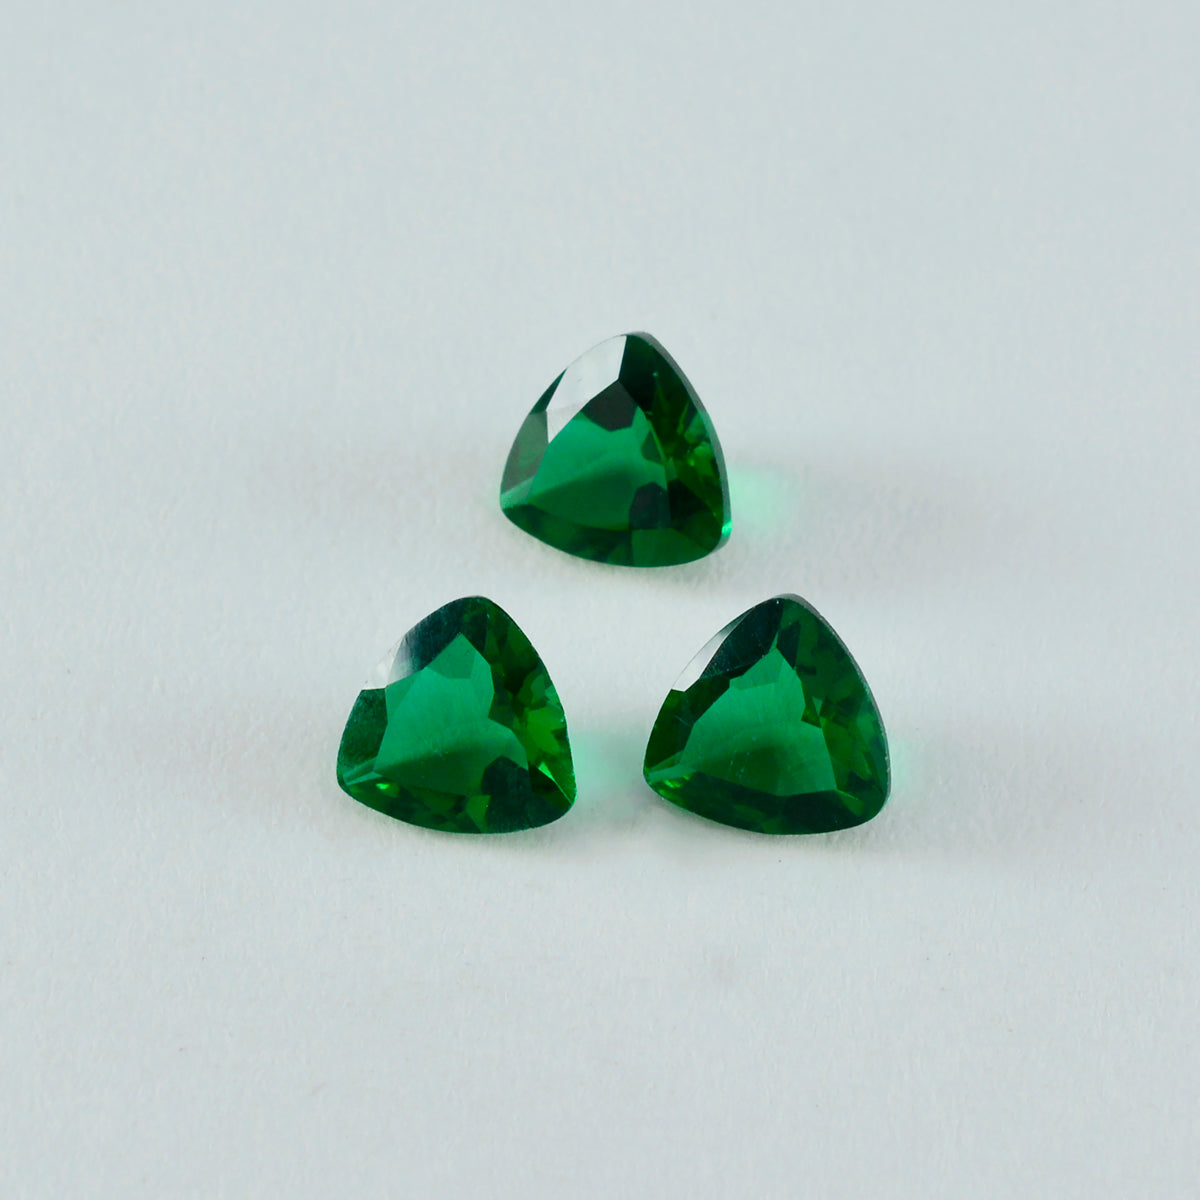 riyogems 1шт зеленый изумруд cz ограненный 13x13 мм форма триллион а+ качество камень